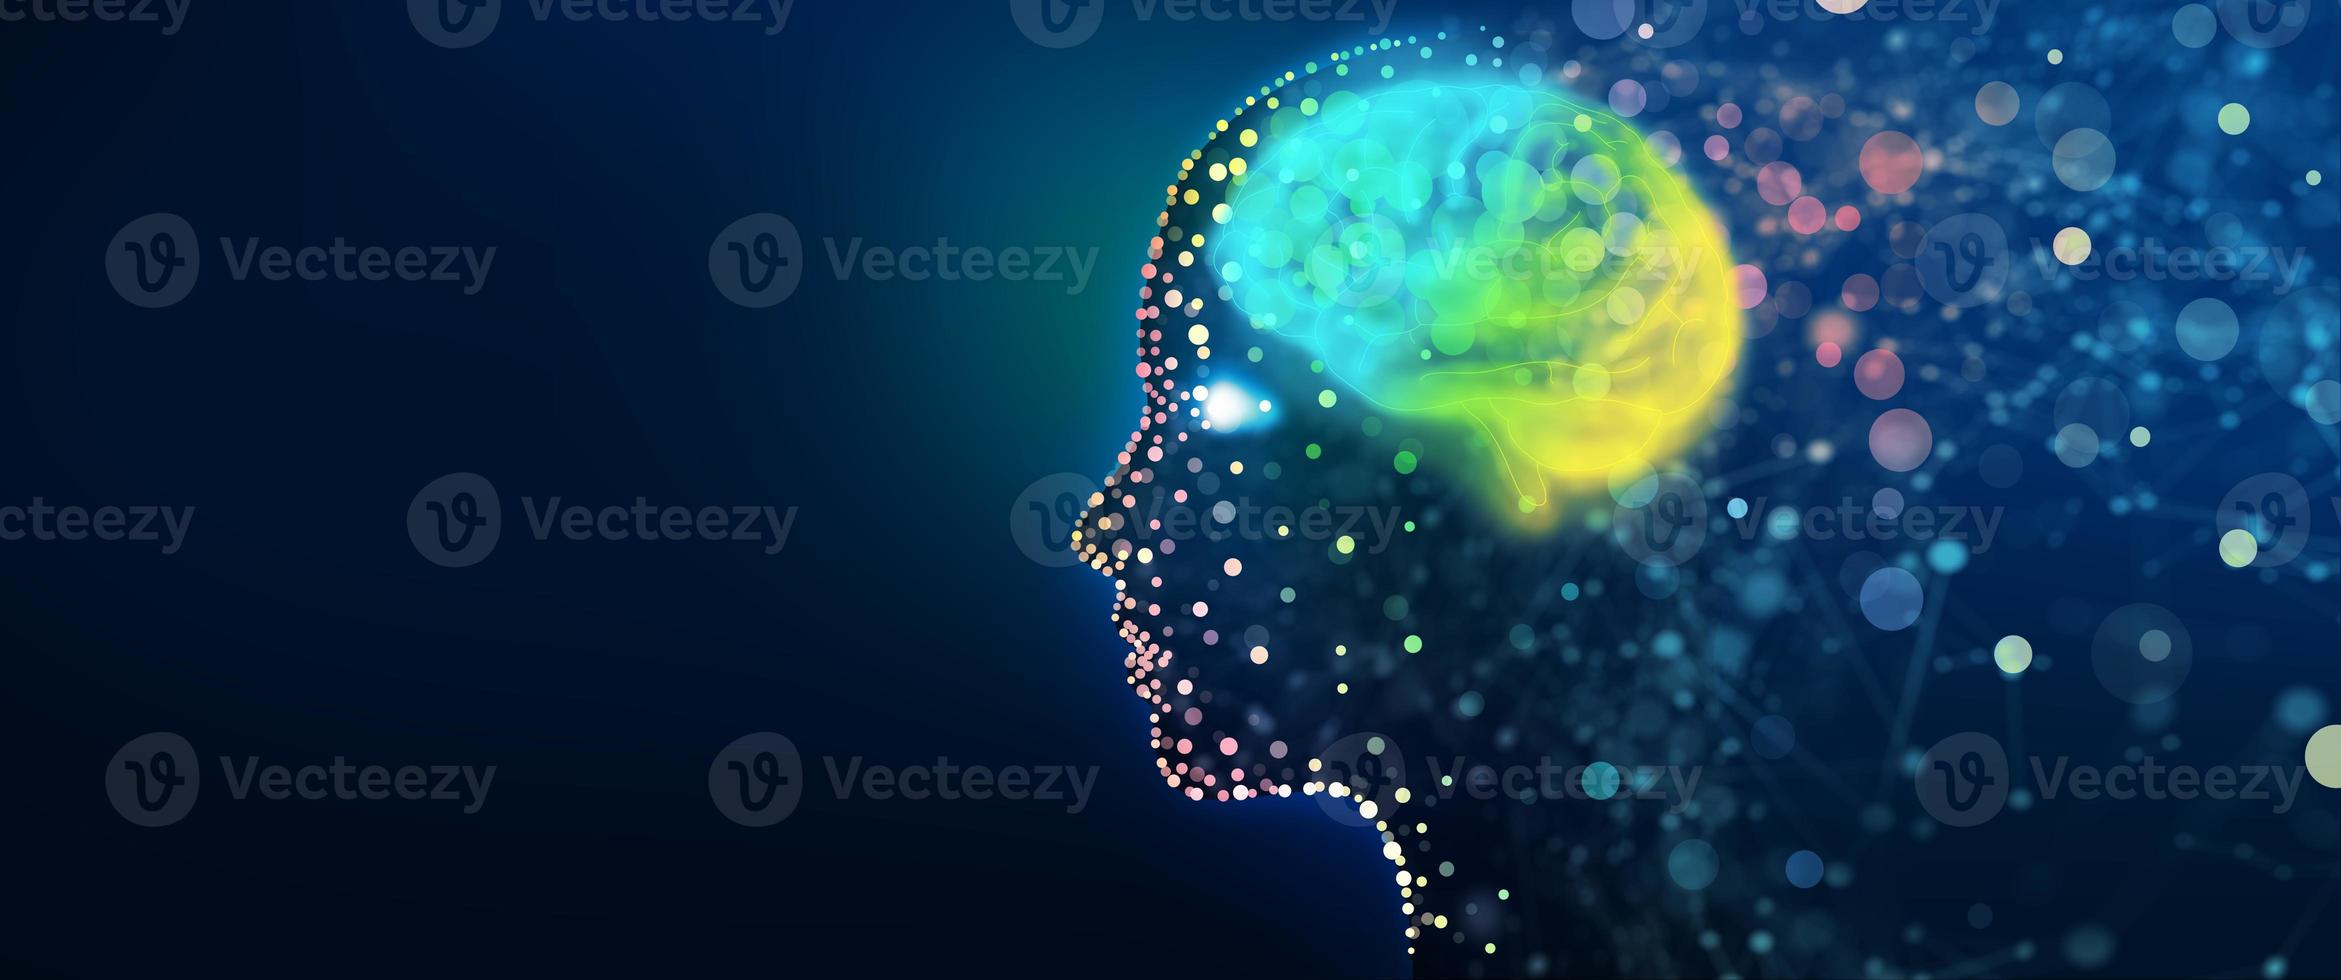 tête humaine avec un réseau cérébral lumineux photo